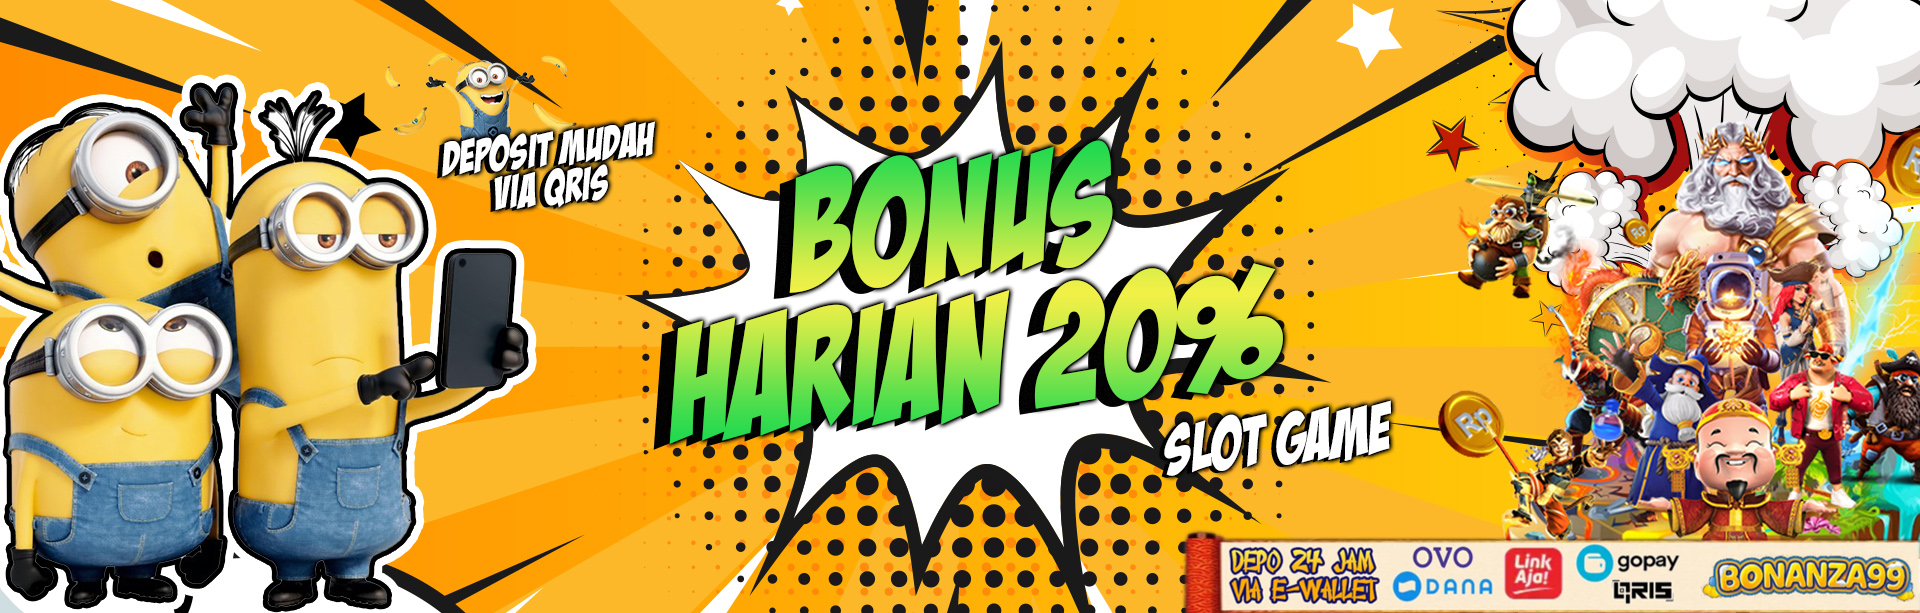 Bonus Deposit Setiap Hari Slot Online 20%